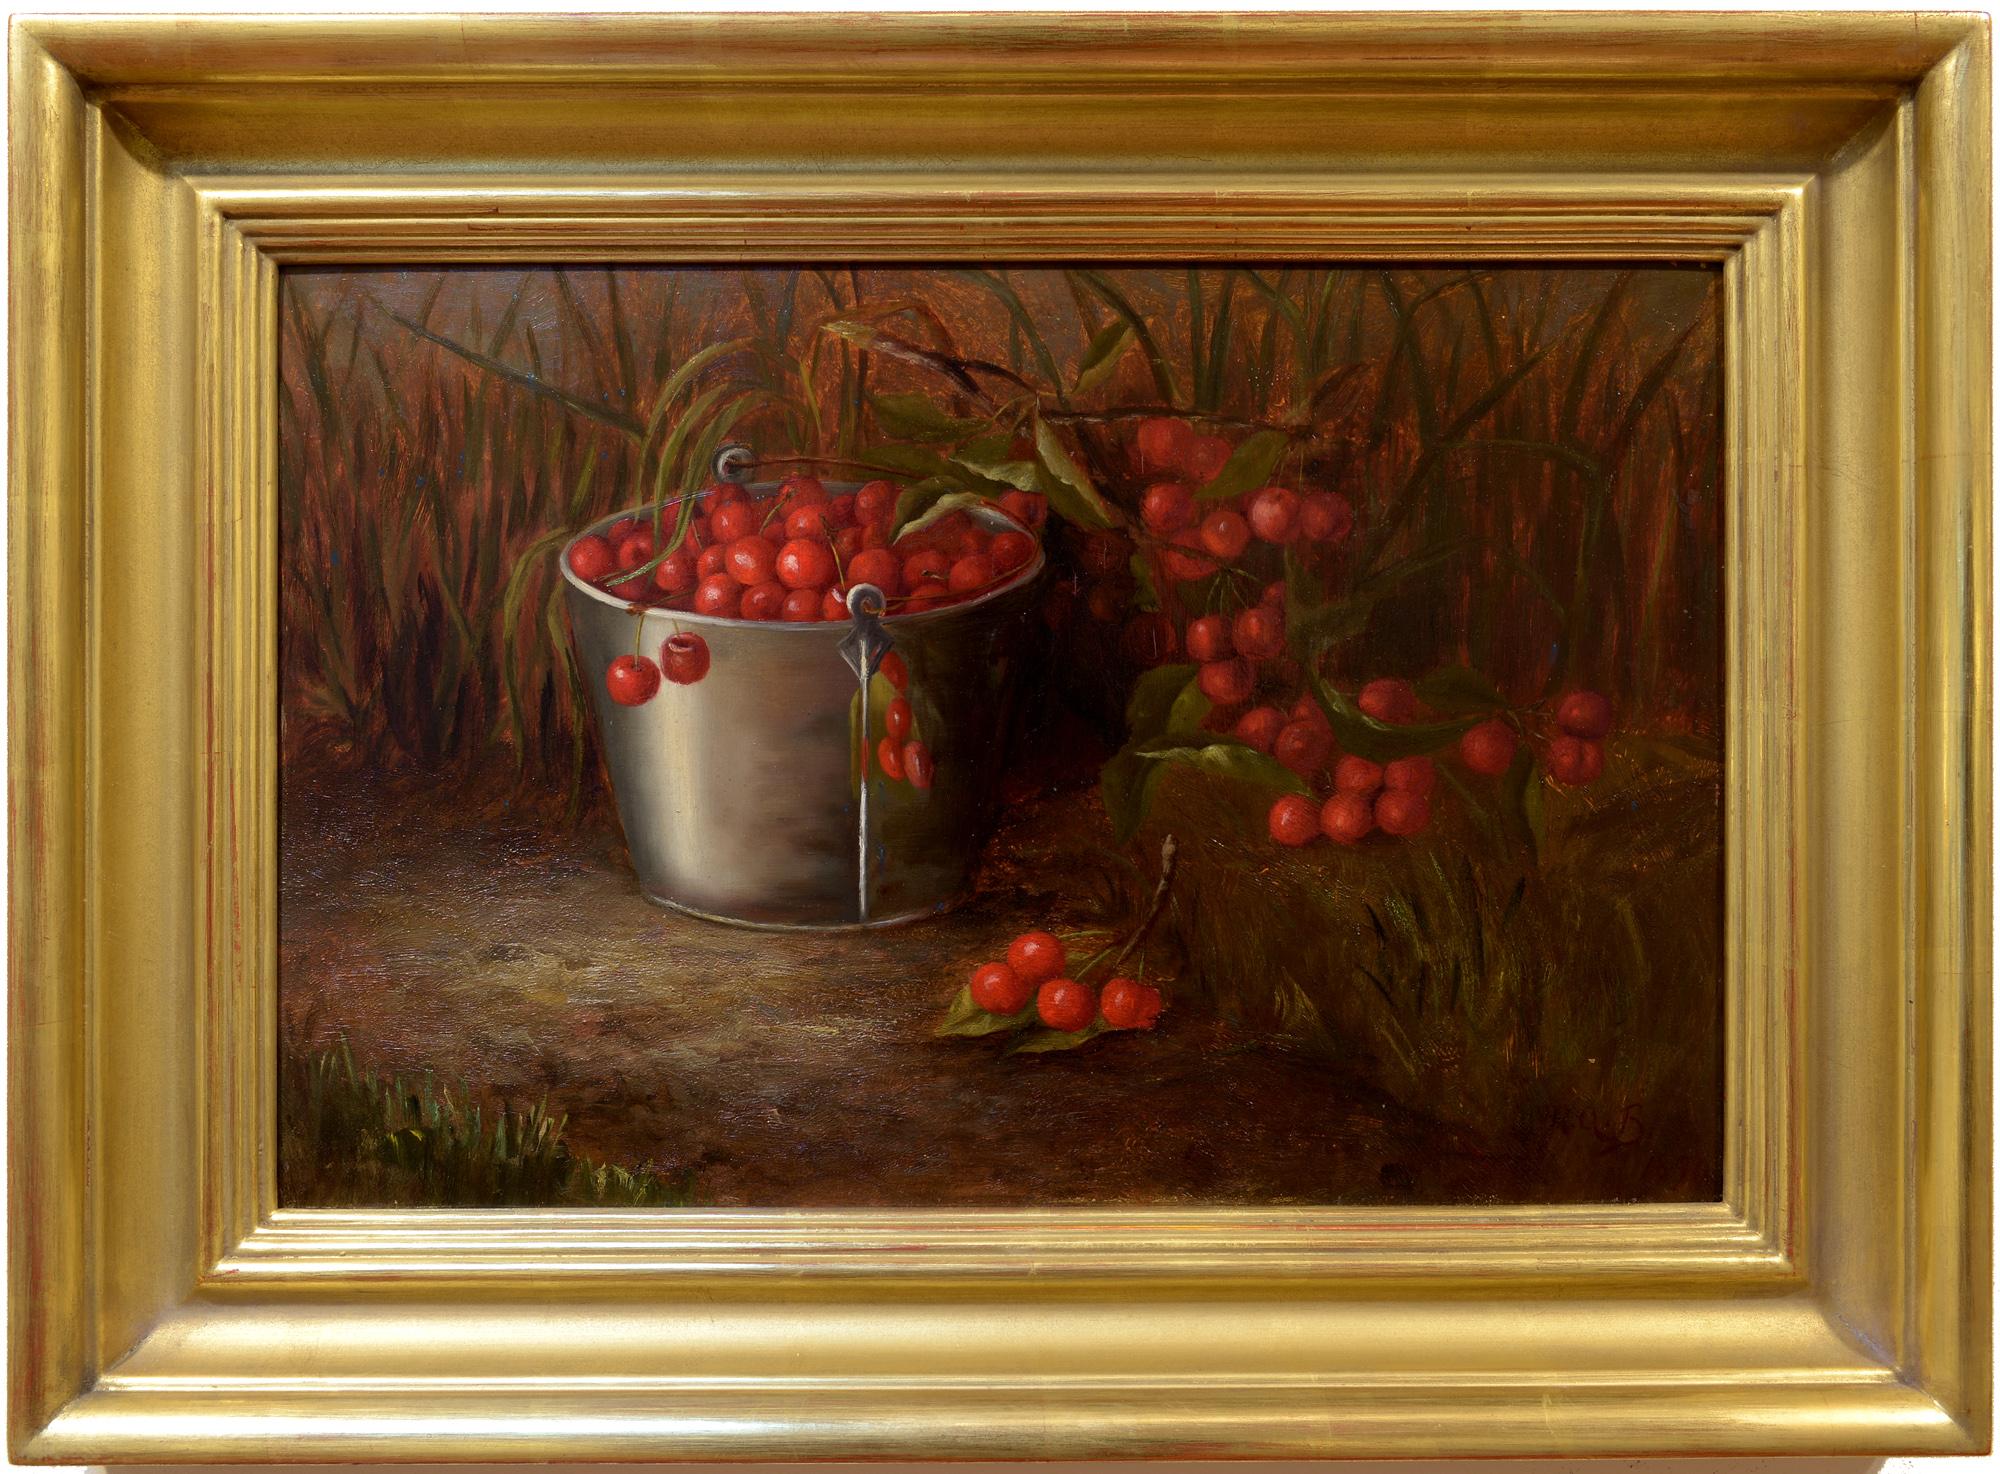 Cherry Picking, Monogrammiert MAB und datiert 1890, American School, Stillleben – Painting von Unknown